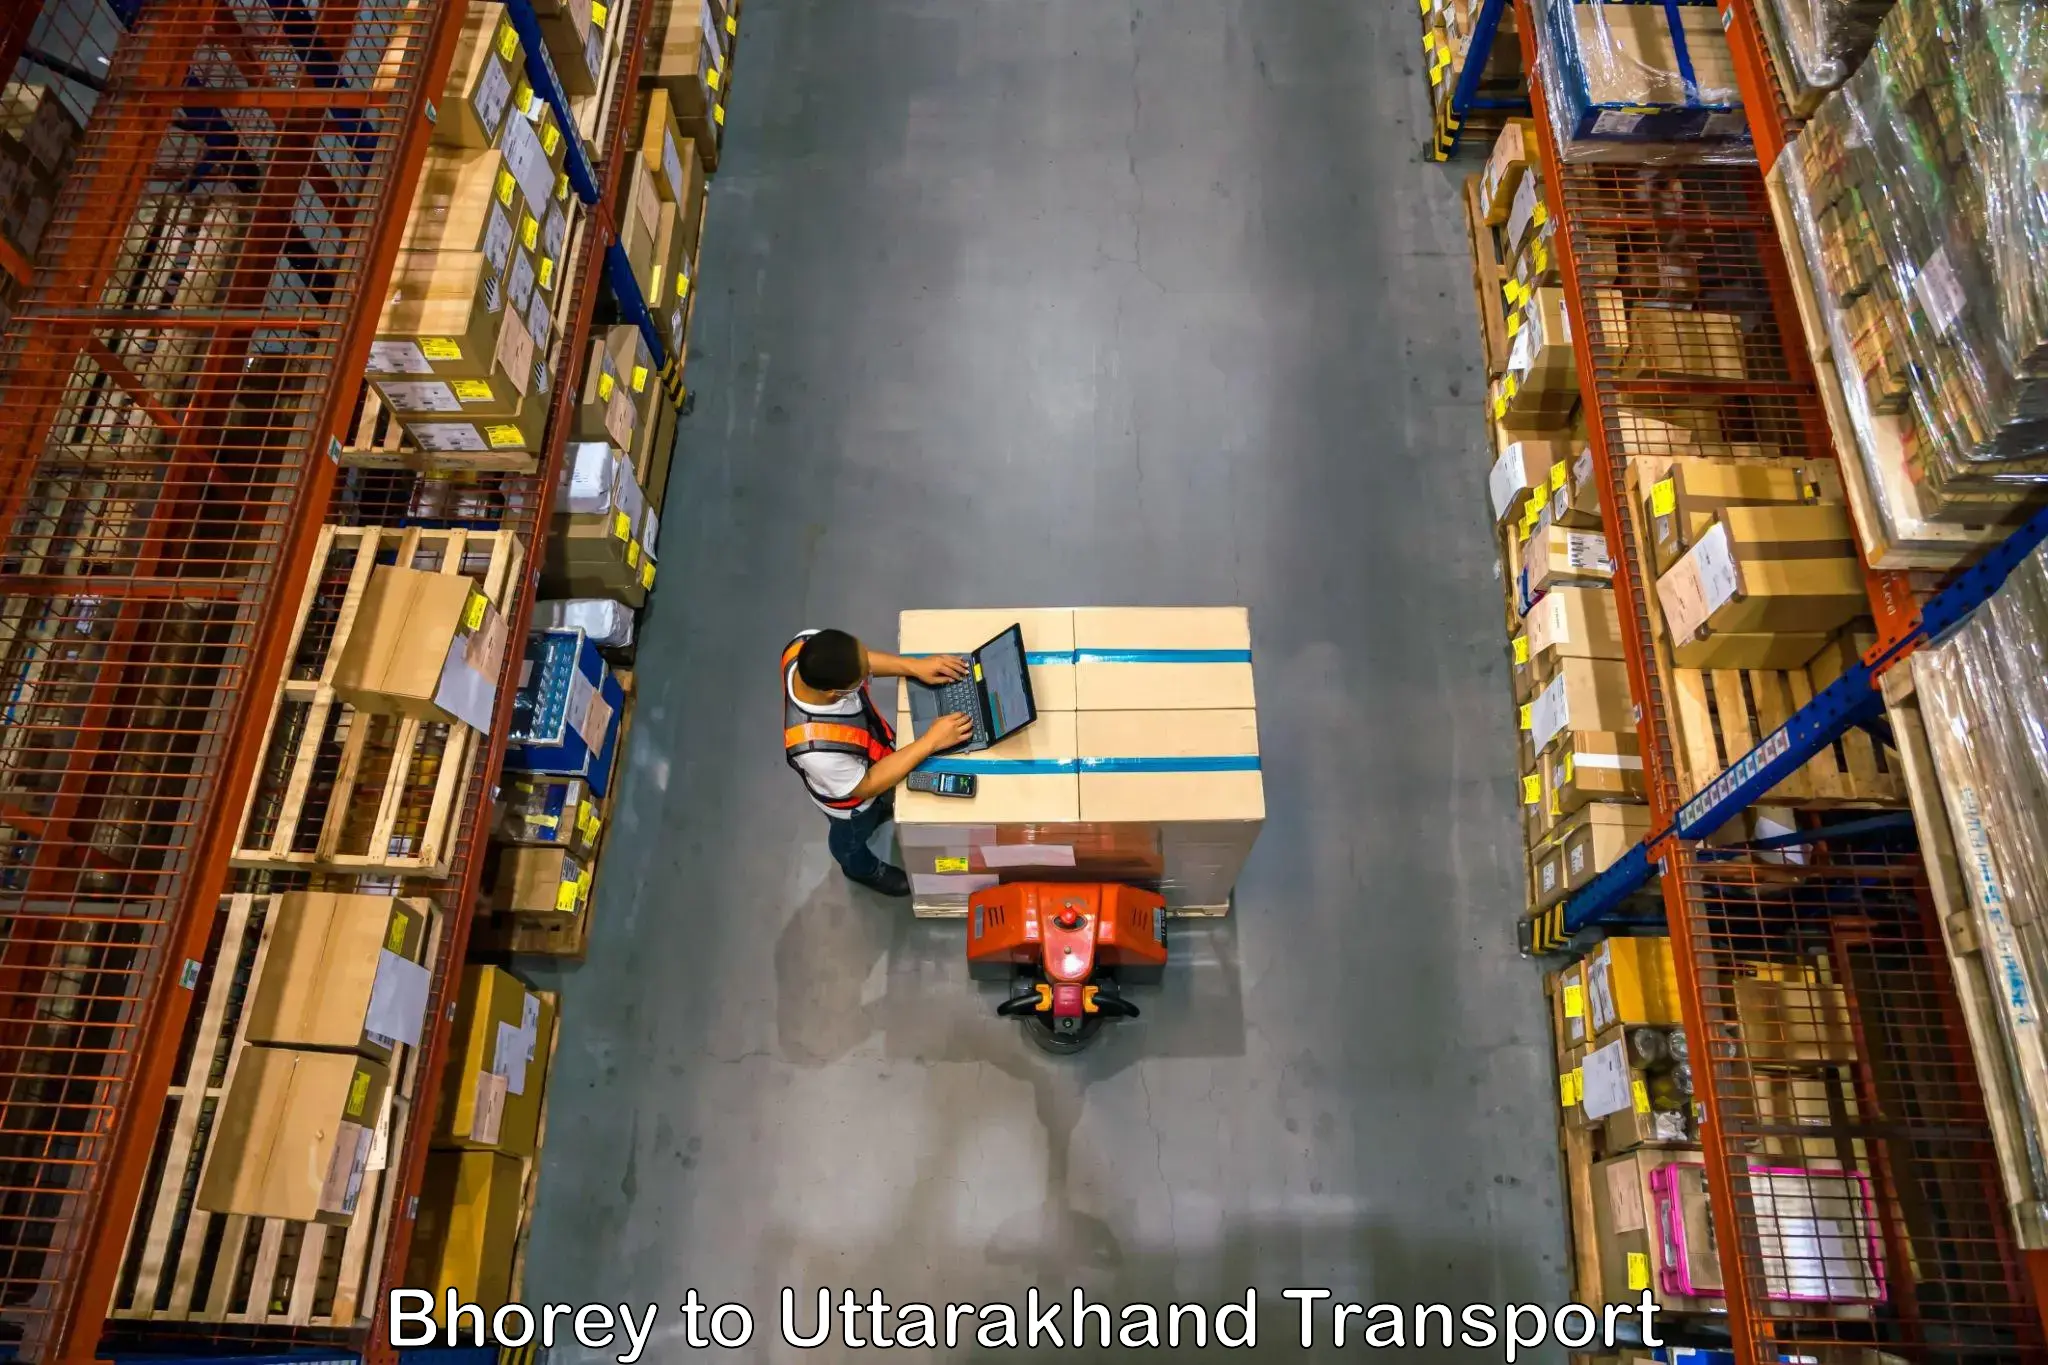 Delivery service Bhorey to Rudraprayag